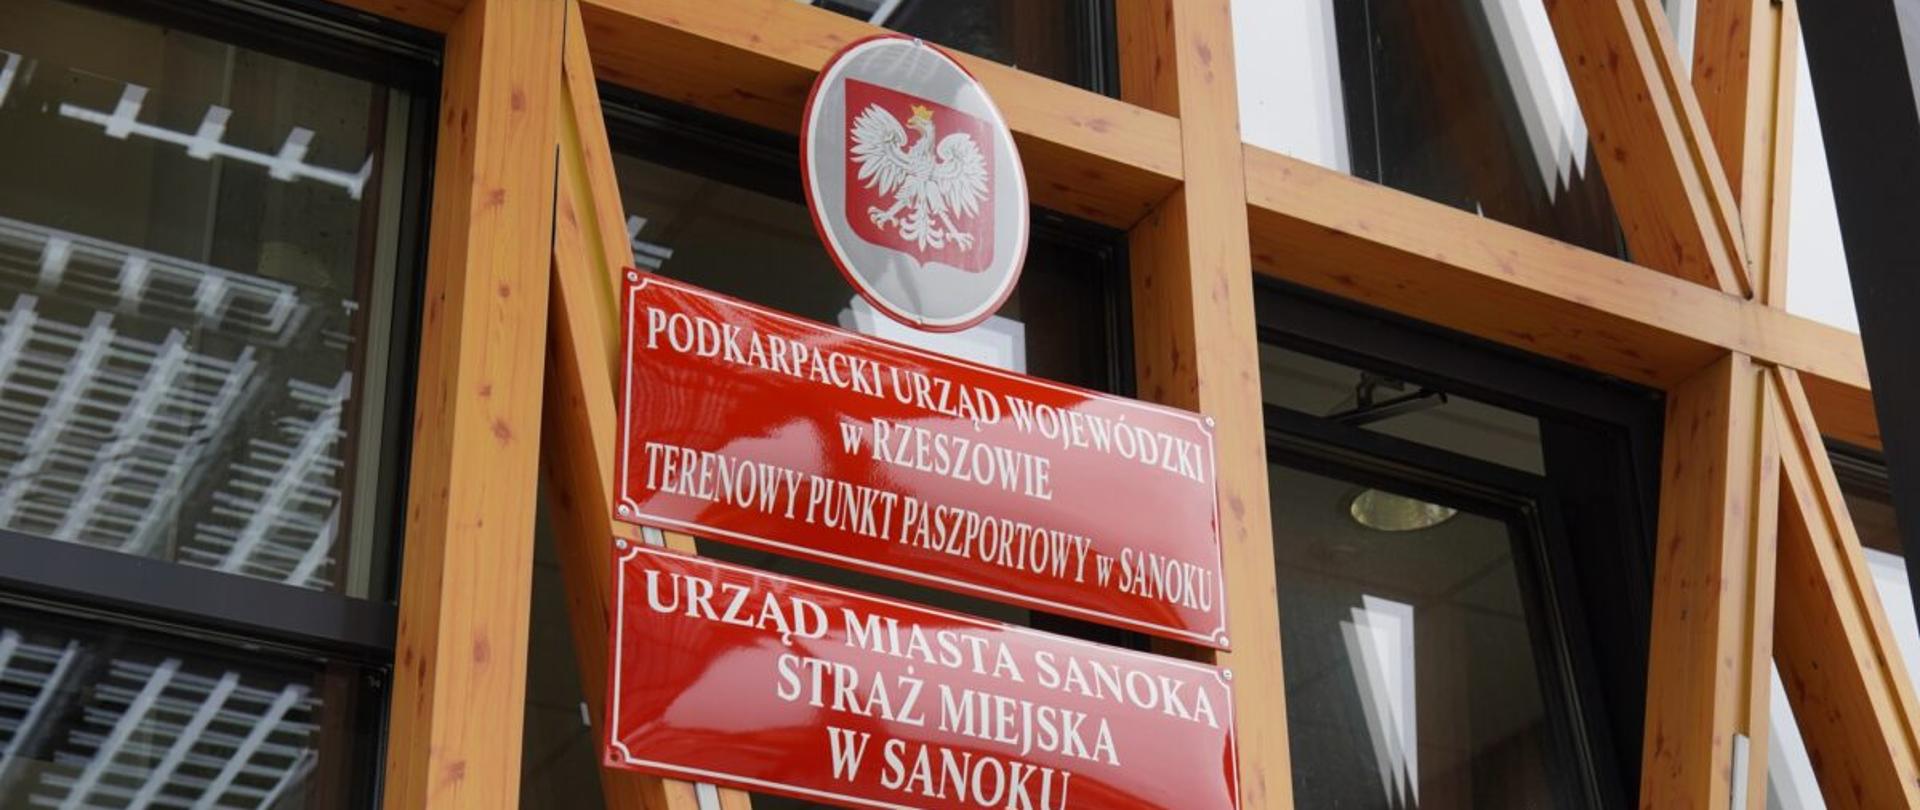 Tablica informacyjna z napisem Podkarpacki Urząd Wojewódzki w Rzeszowie Terenowy Punkt Paszportowy w Sanoku